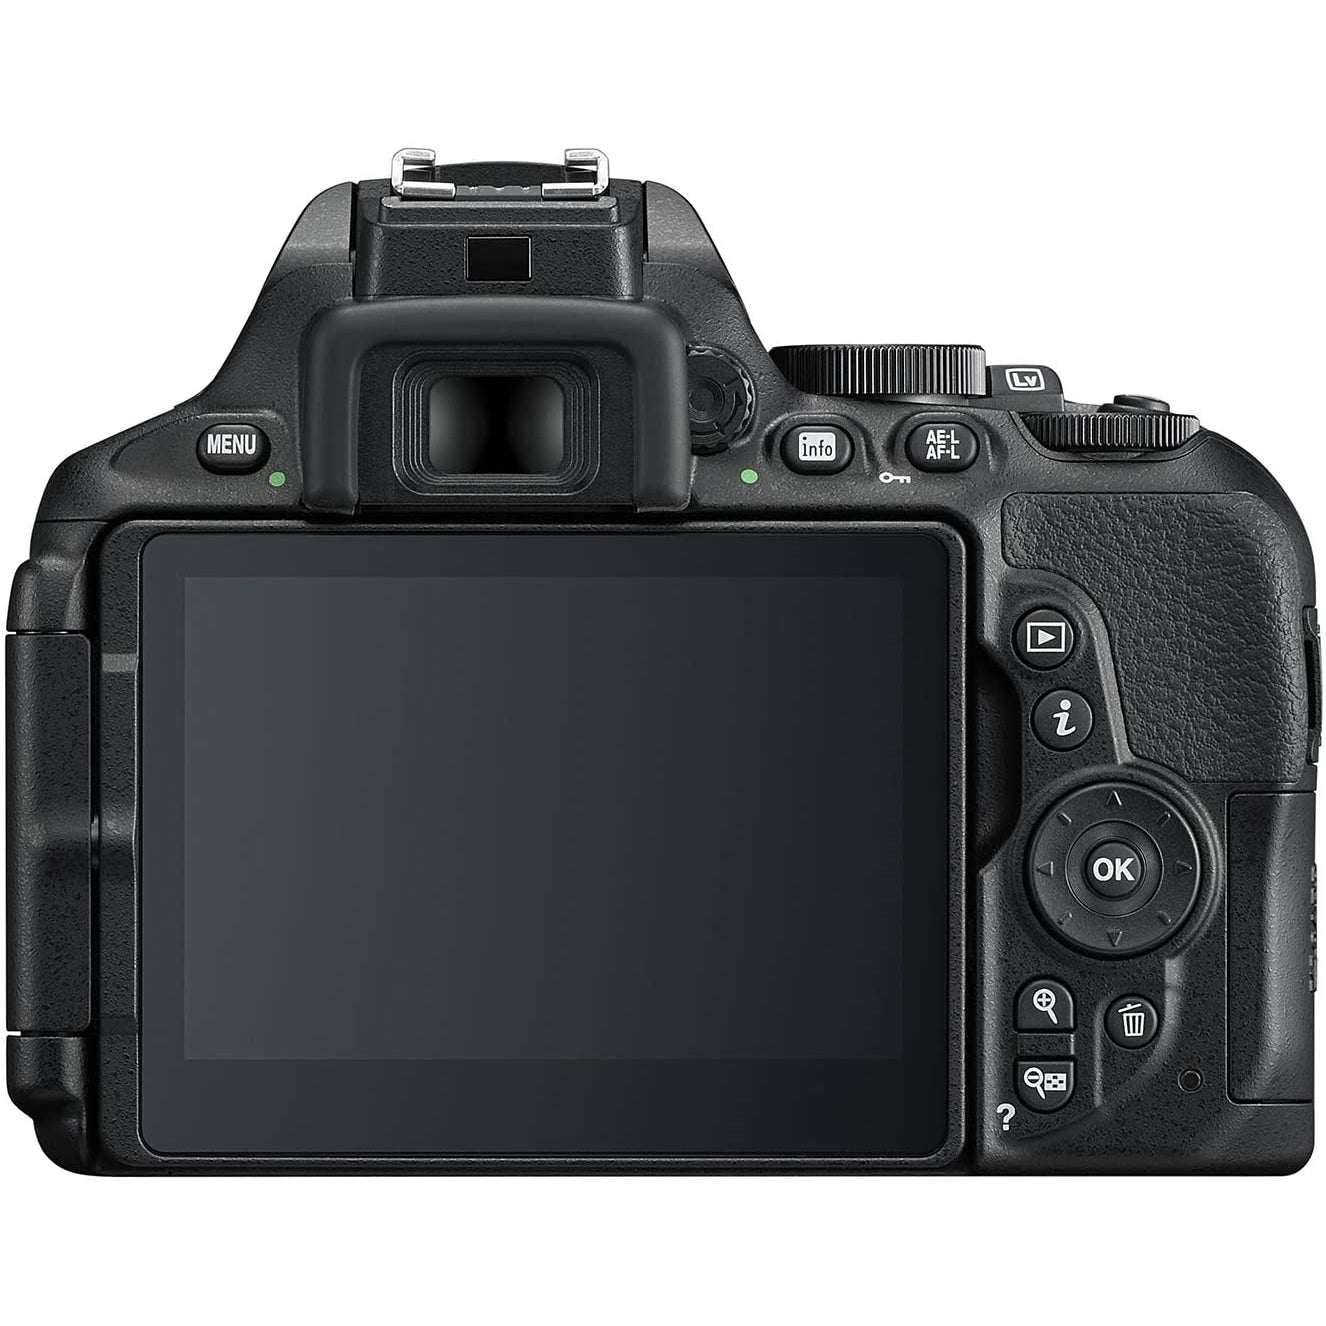 Nikon D5600 DSLR Camera with AF-P 18-55VR Lens, Black